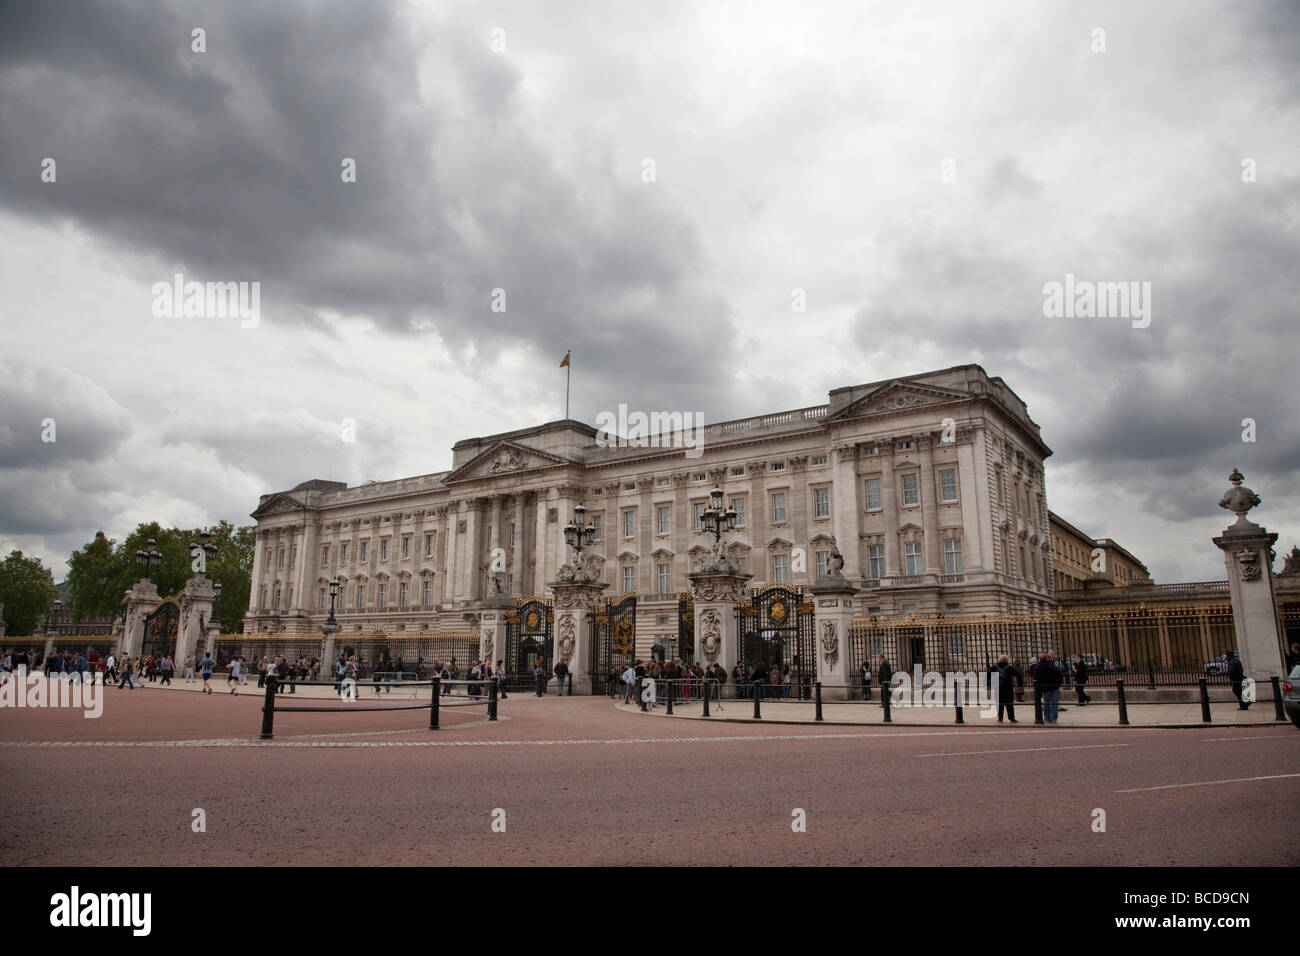 Buckingham Palace, London UK Stock Photo